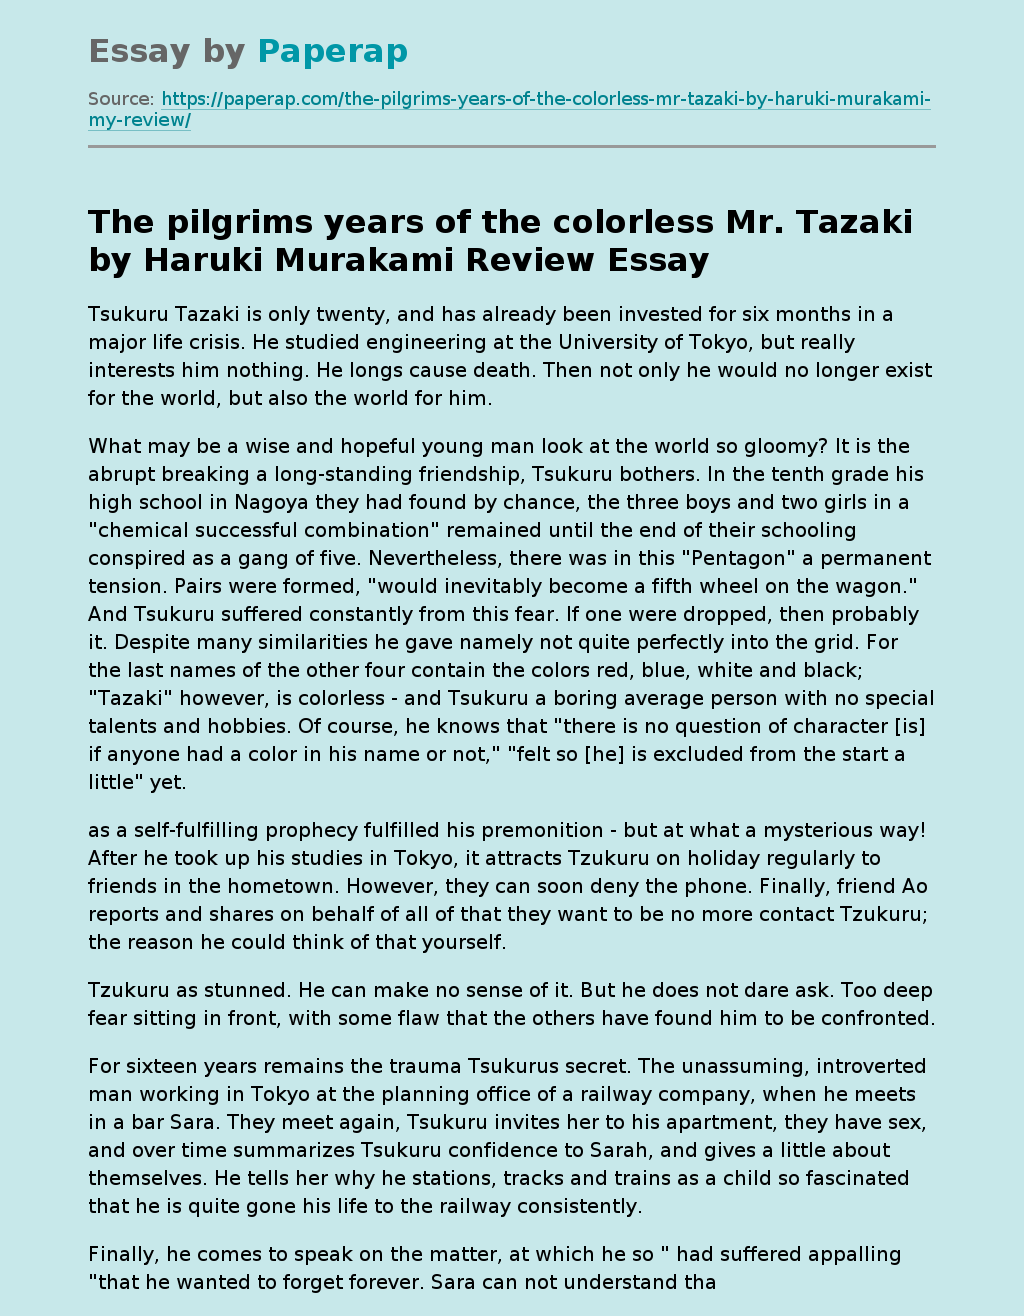 "The pilgrims years of the colorless Mr. Tazaki" by Haruki Murakami. Review